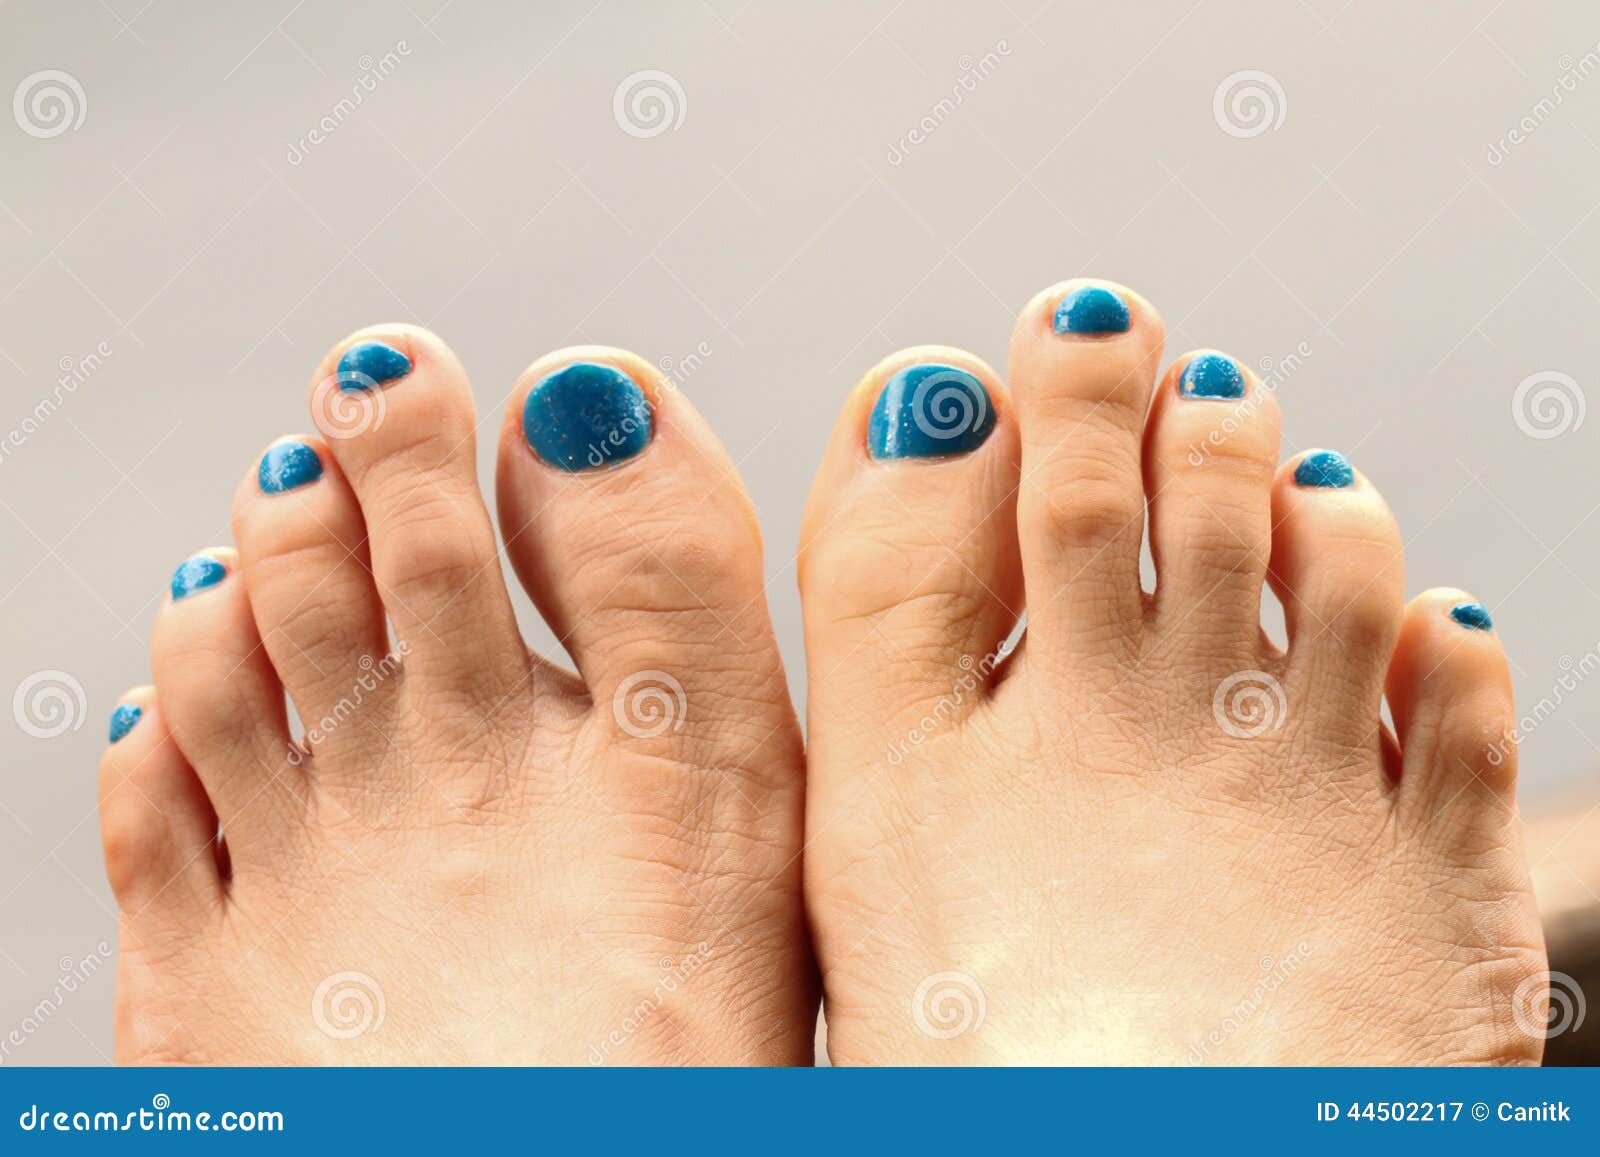 手指甲和脚趾甲哪个长得更快？ - 生活常识 - 蓝灵育儿网